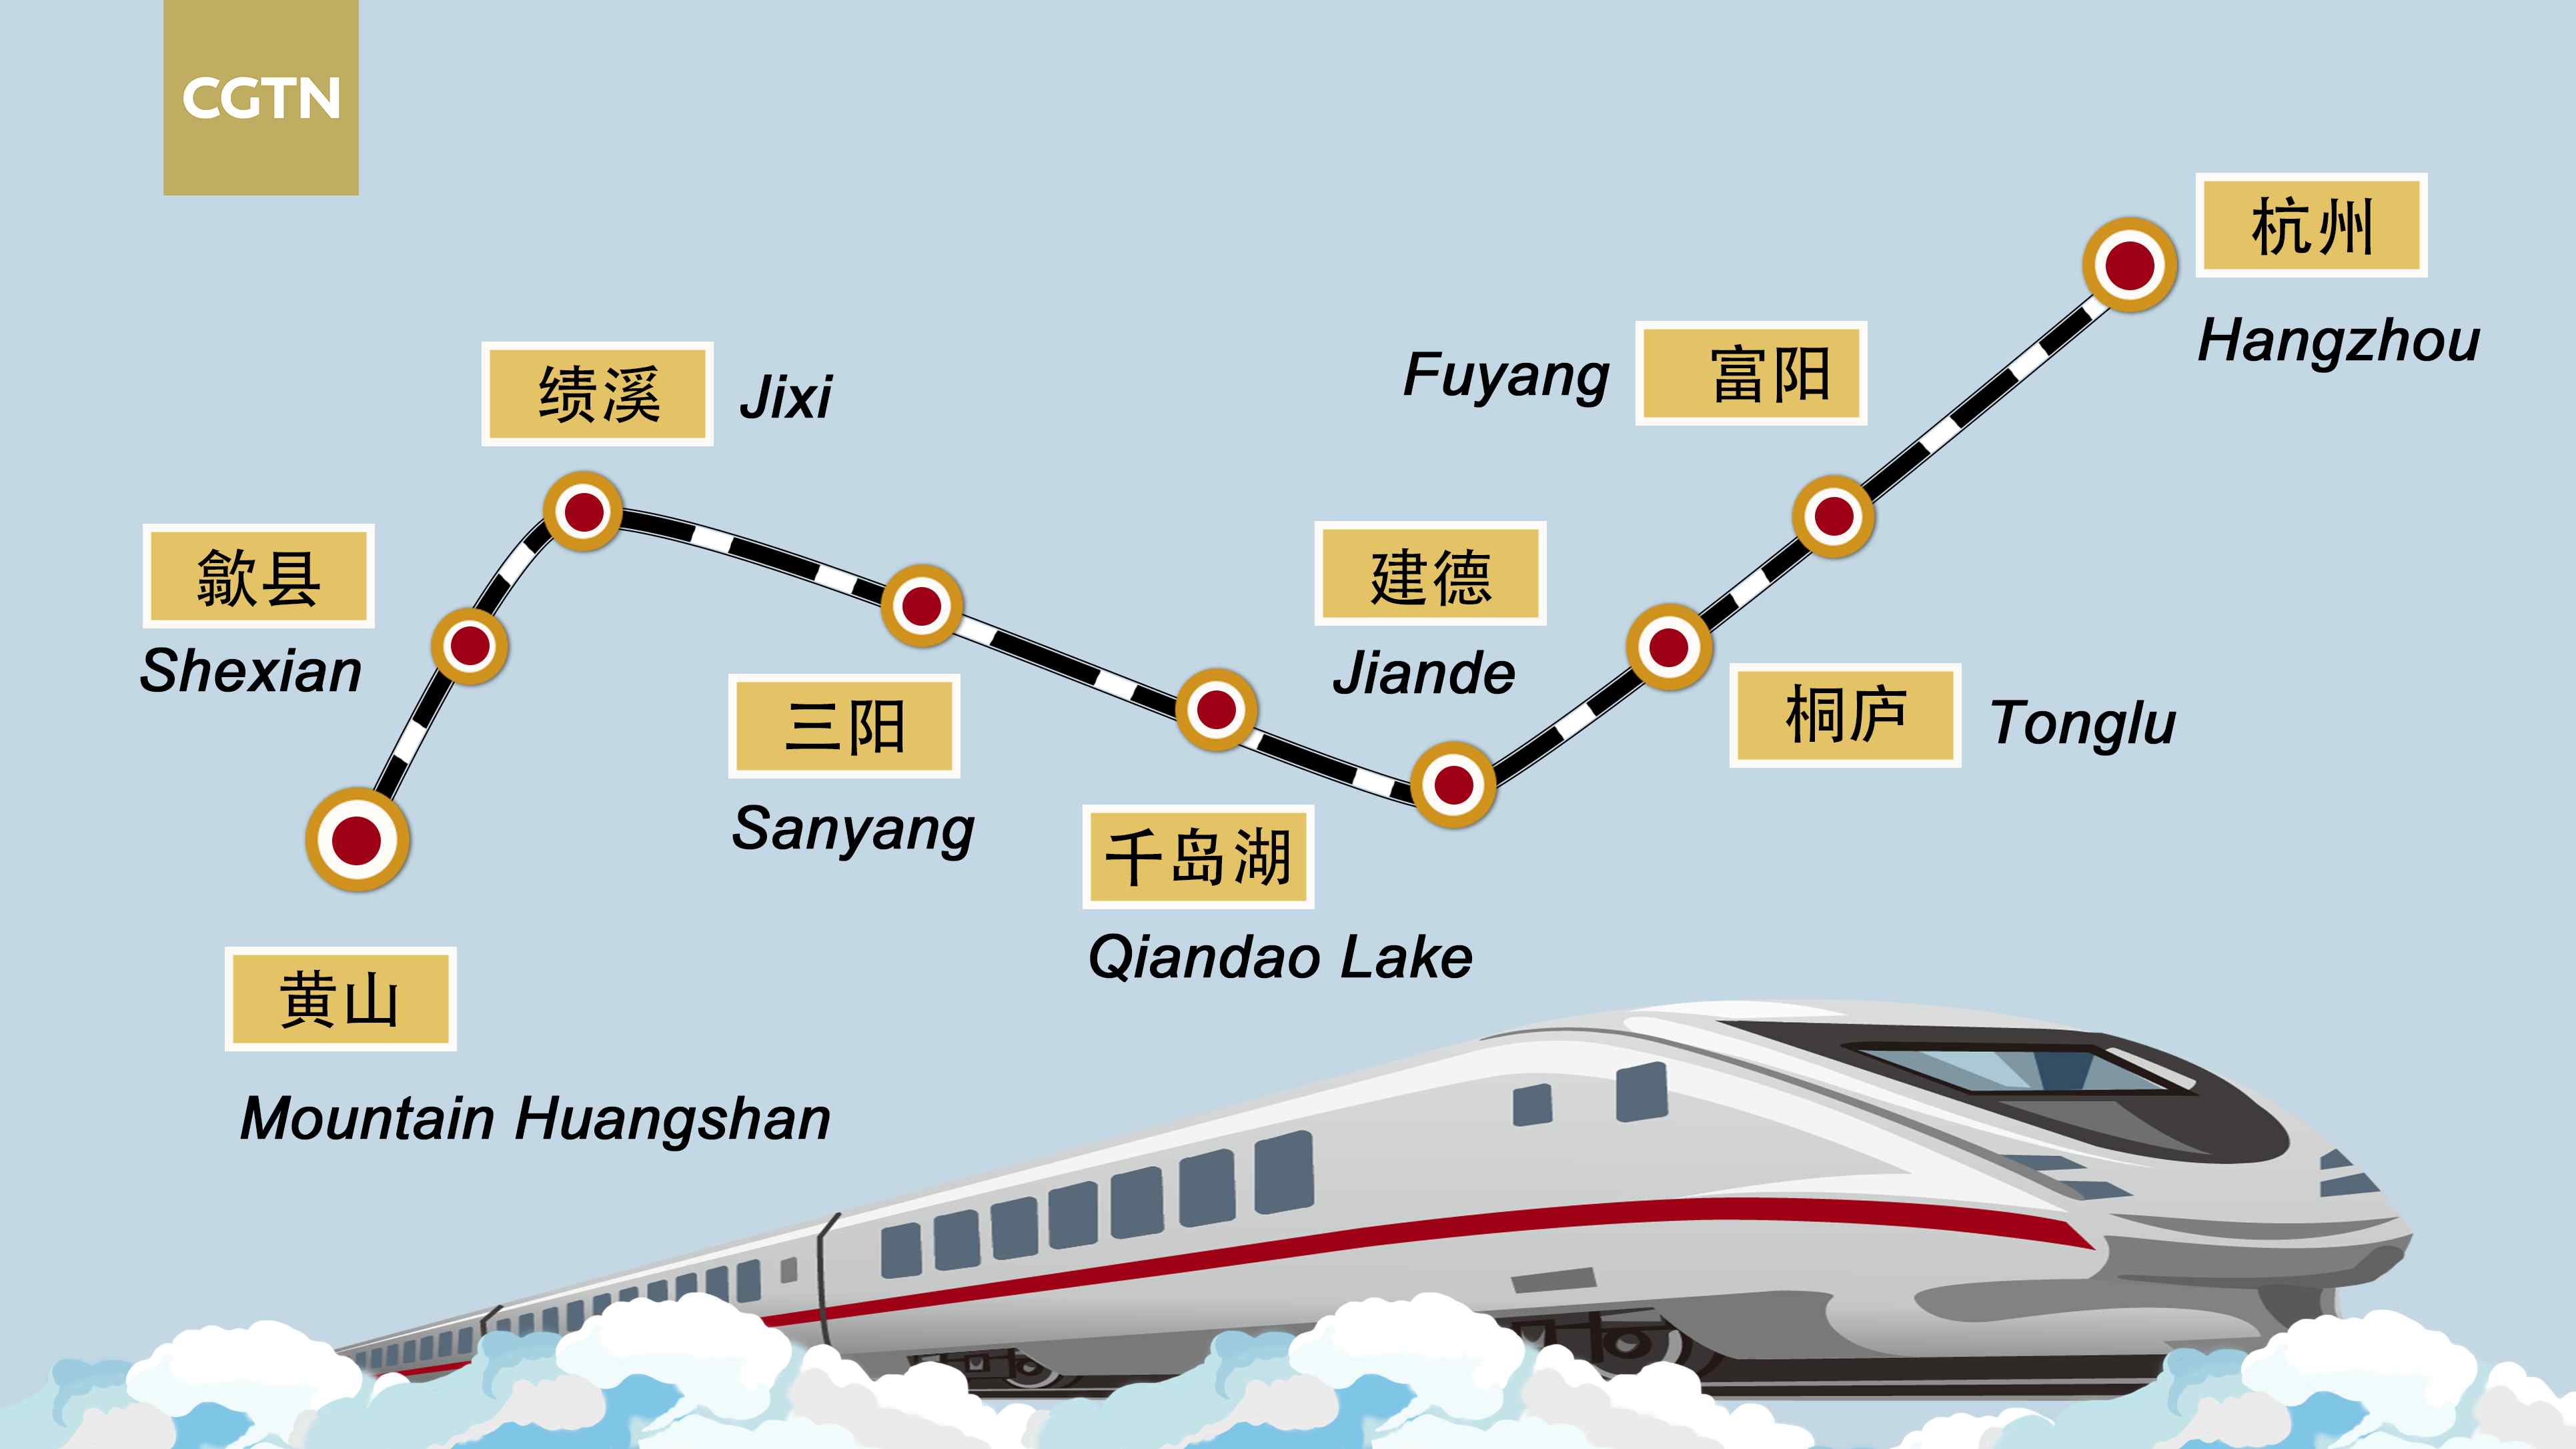 Journeys on China’s highspeed rail CGTN